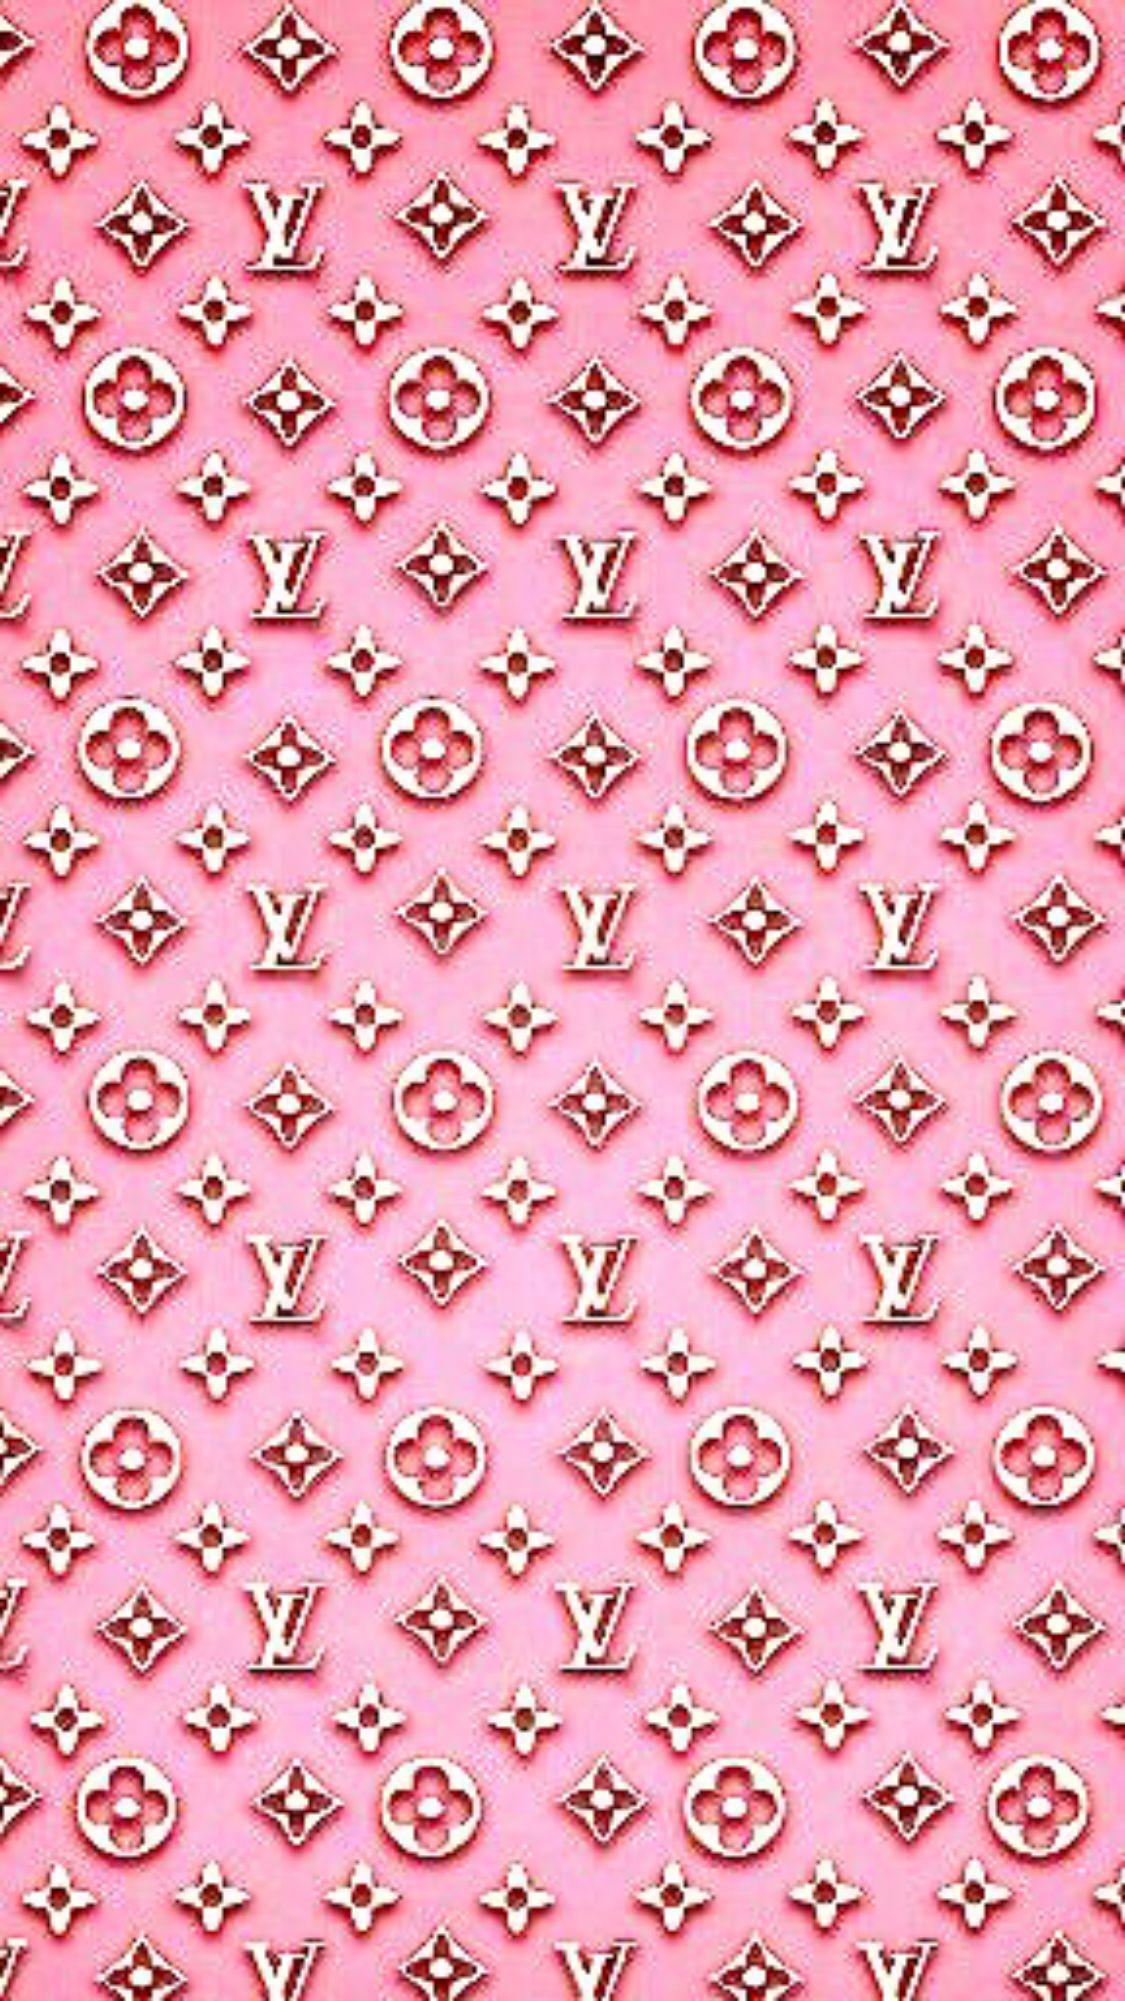 1125 x 2001 · jpeg - Pink and Gold Louis Vuitton iPhone wallpaper #Luxurydotcom | New ...